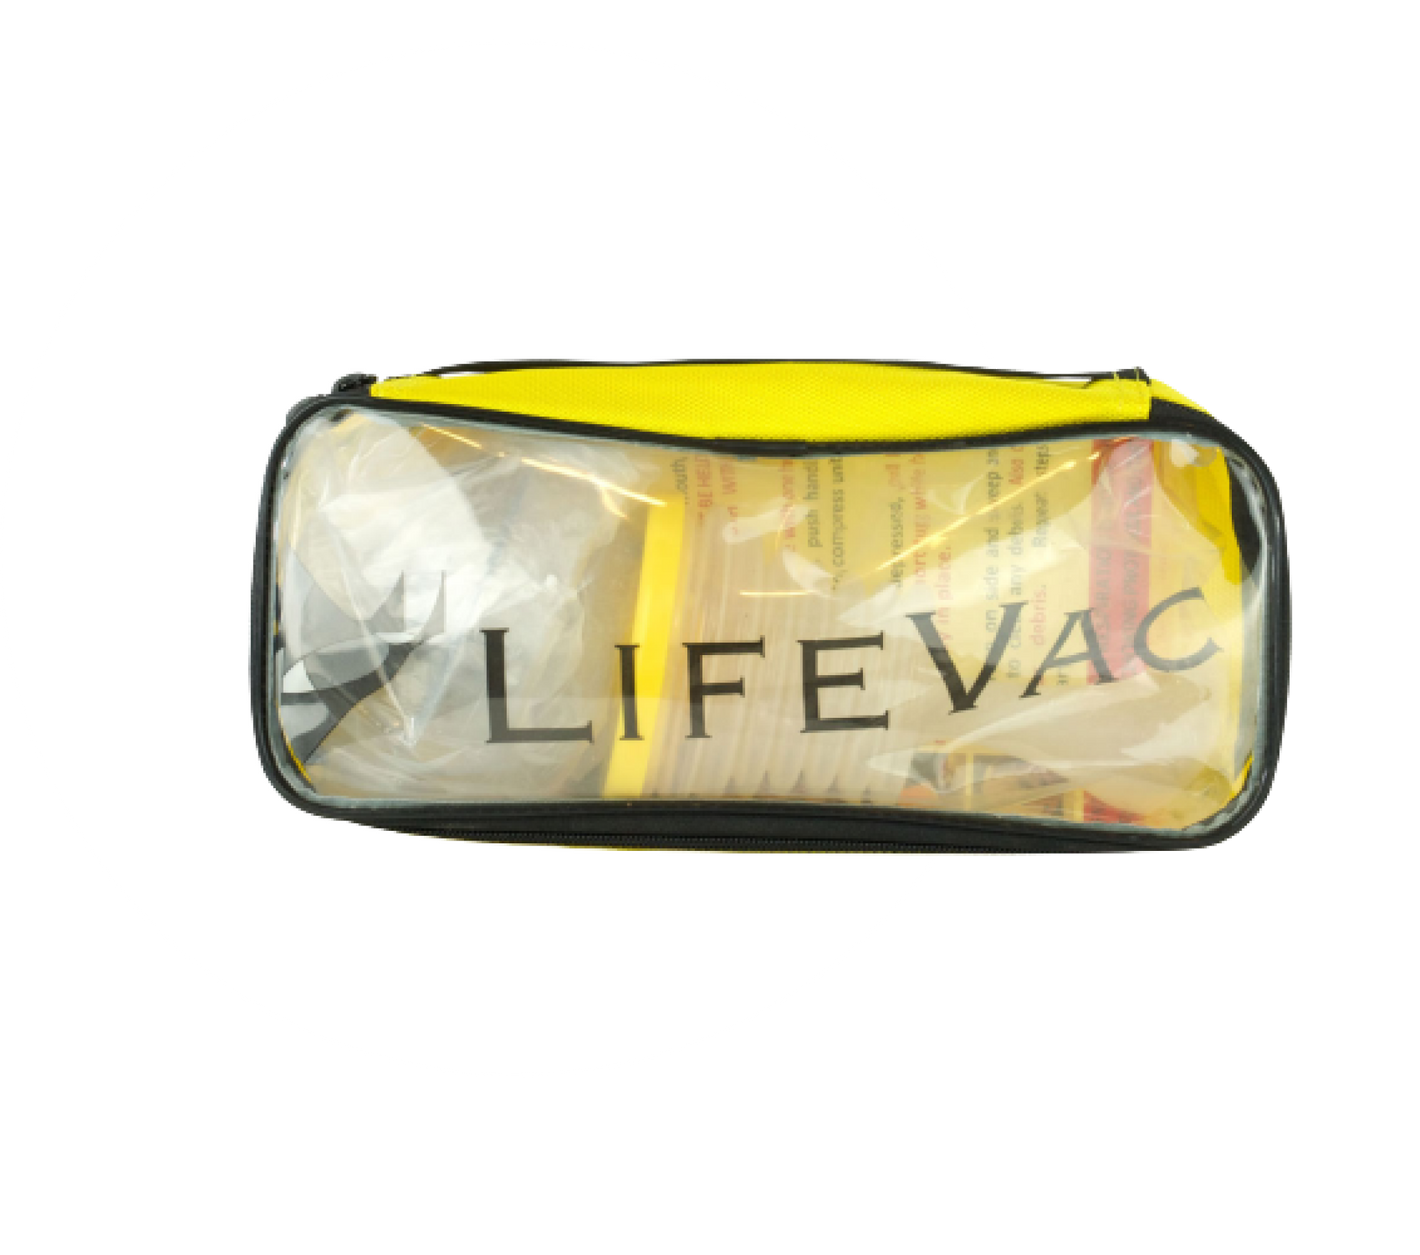 LifeVac Notfallgerät gegen Erstickungsgefahr